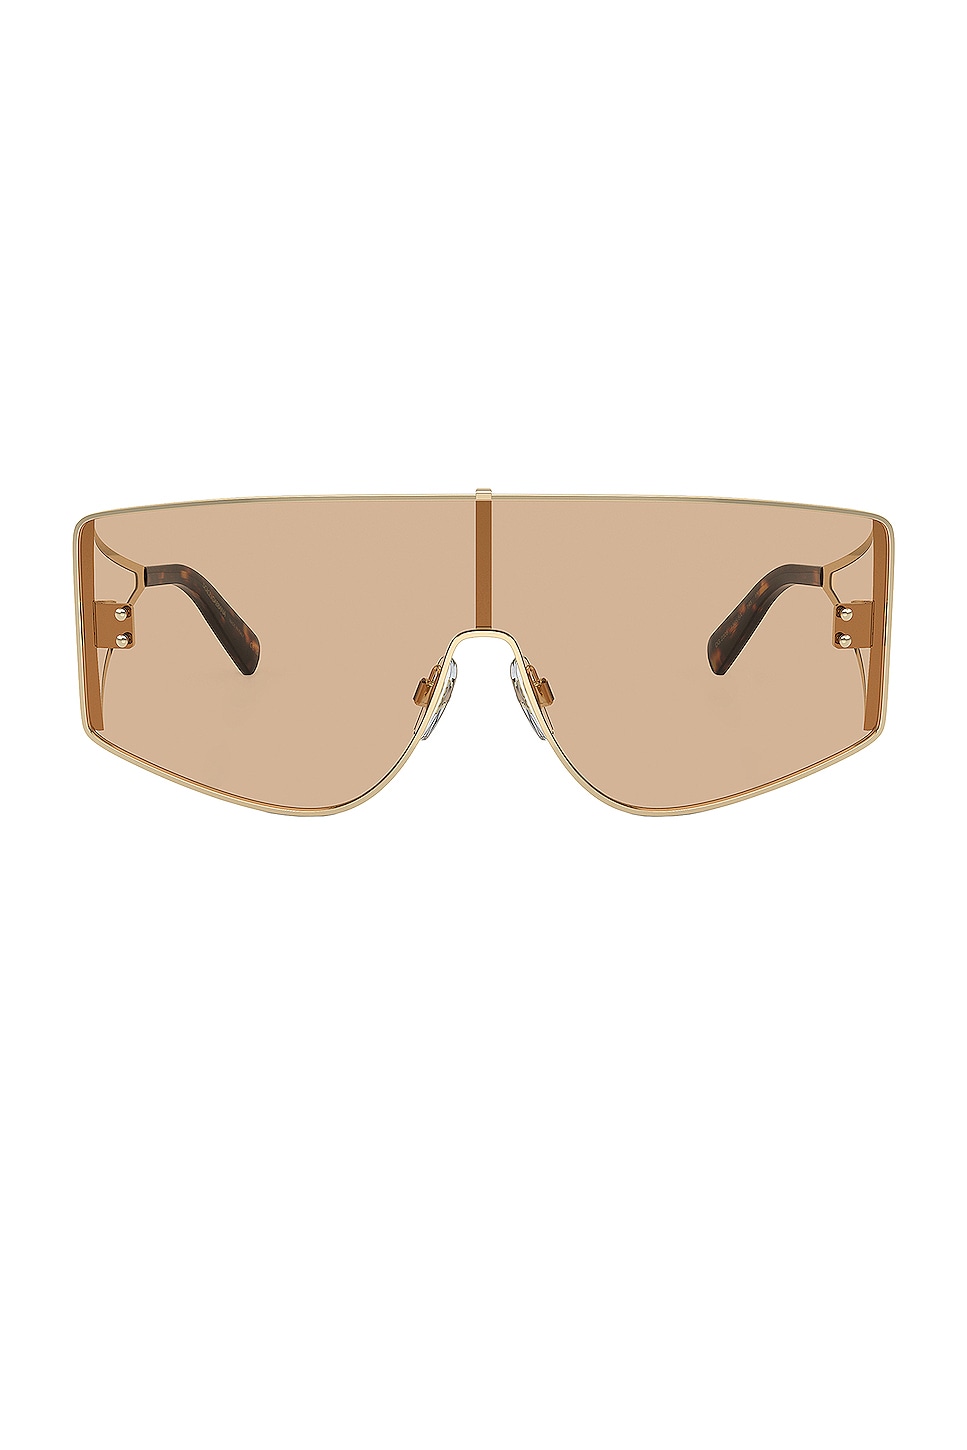 Dolce & Gabbana Shield Sunglasses In Light Gold